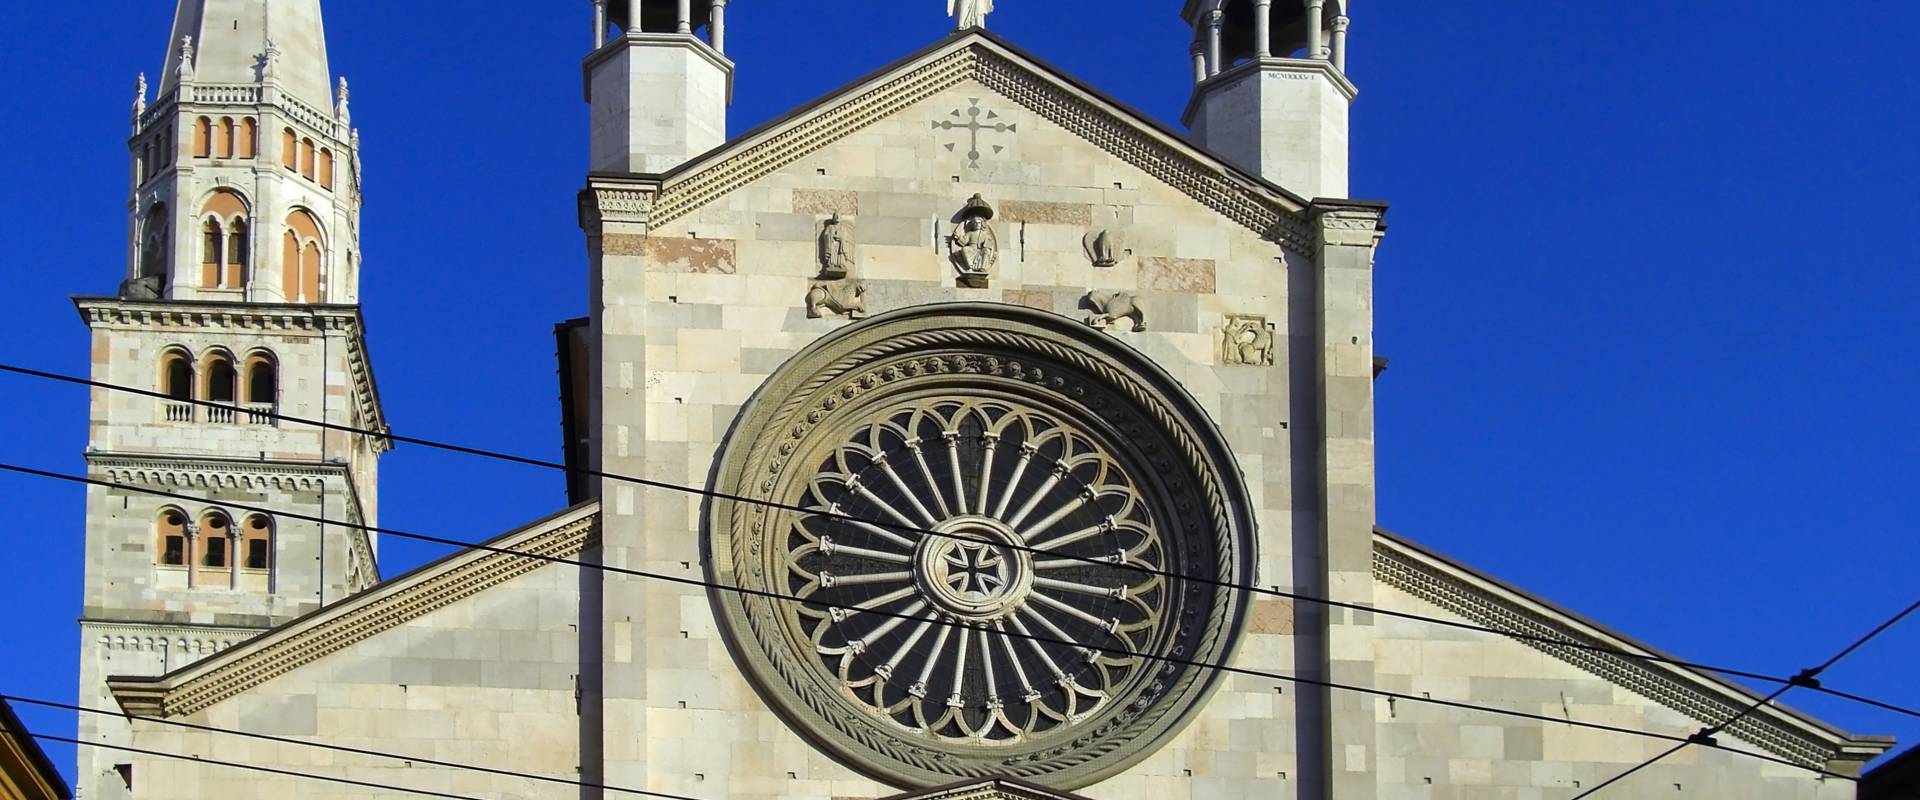 Panoramica del Duomo di Modena e Ghirlandina foto di Matteolel